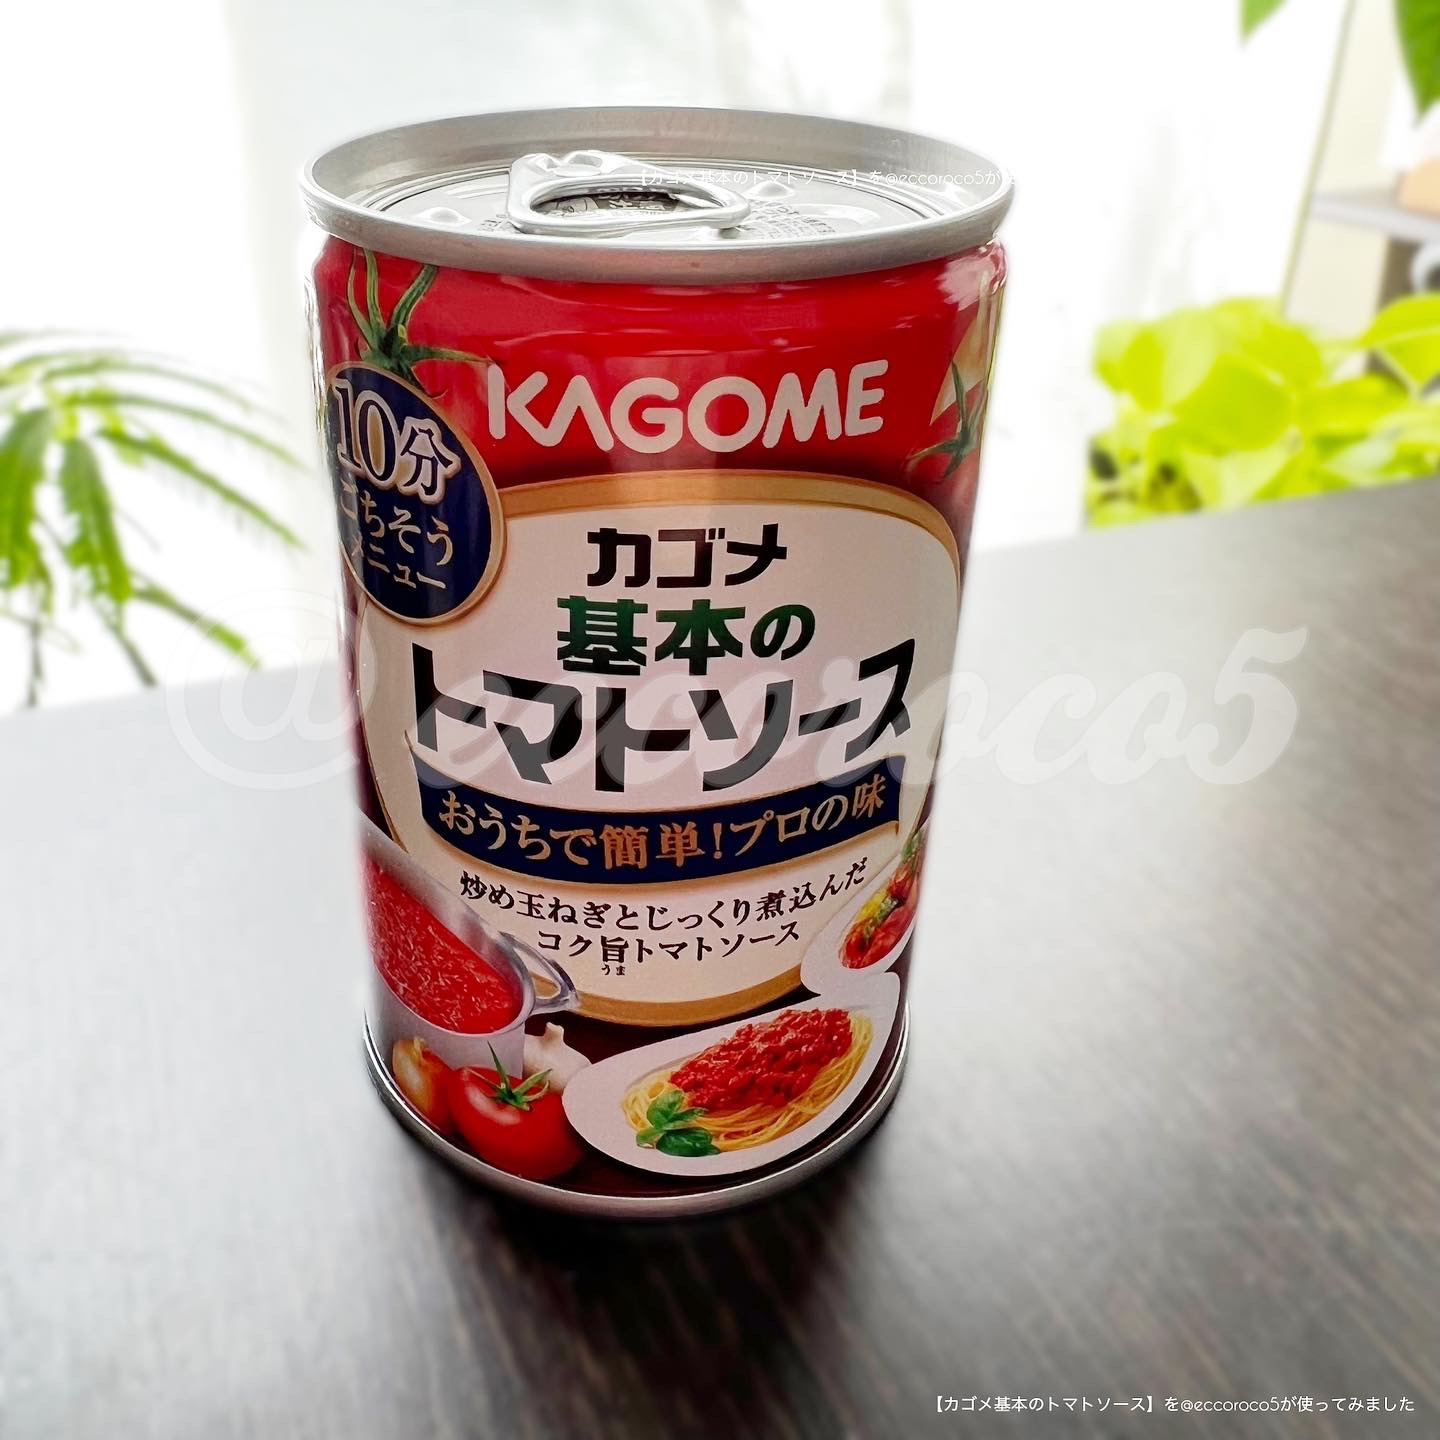 KAGOME(カゴメ) 基本のトマトソースの良い点・メリットに関する@eccoroco5さんの口コミ画像2